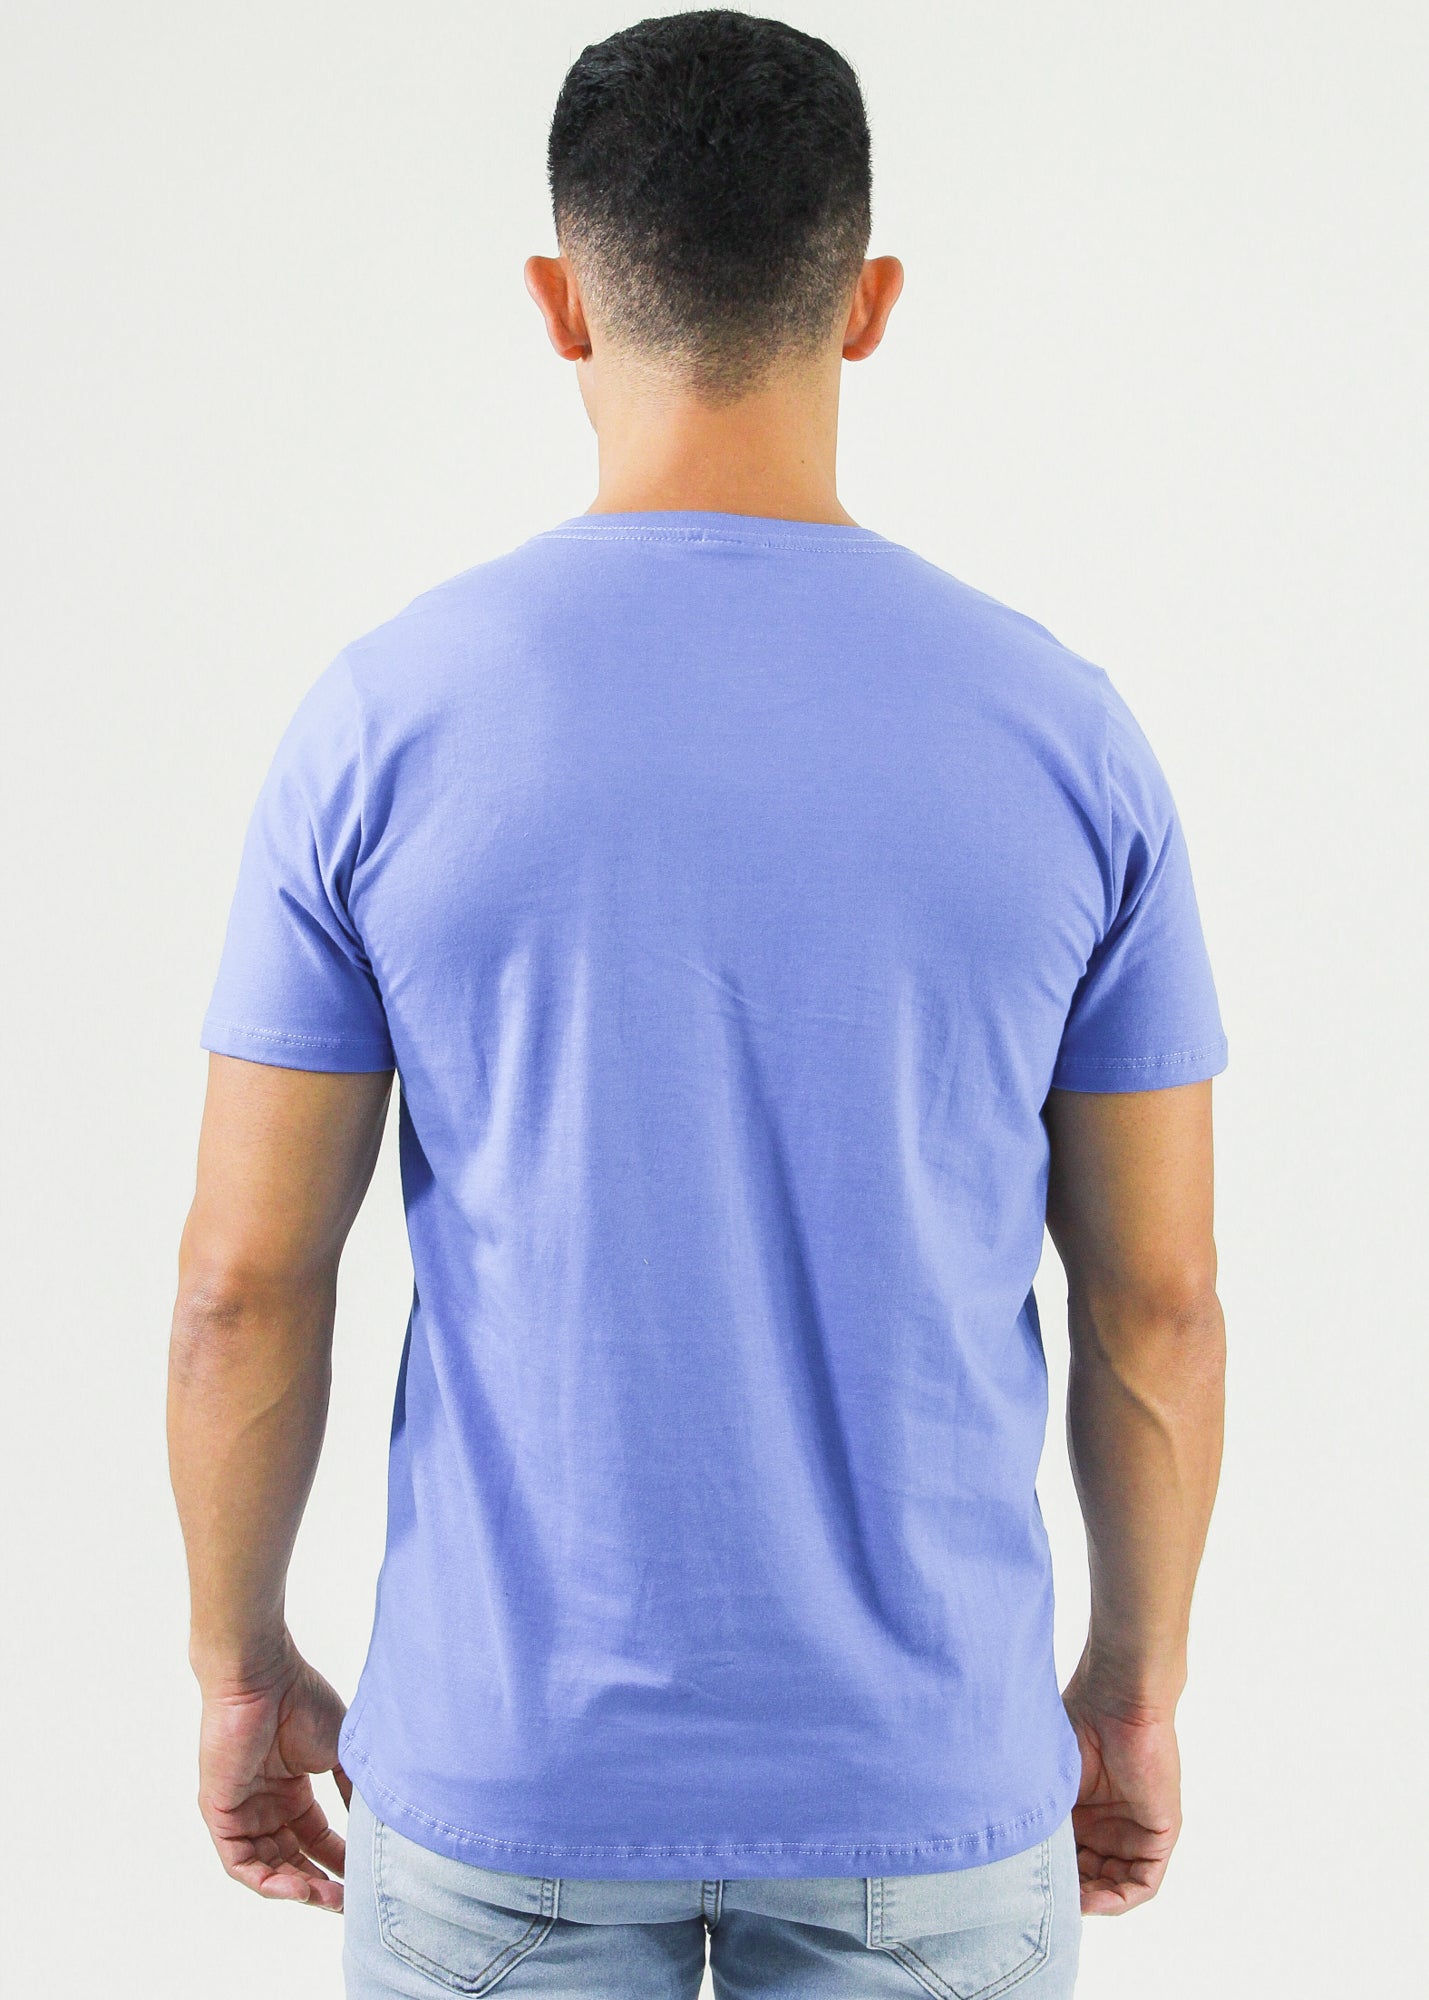 Camiseta Estampada Surf - Azul